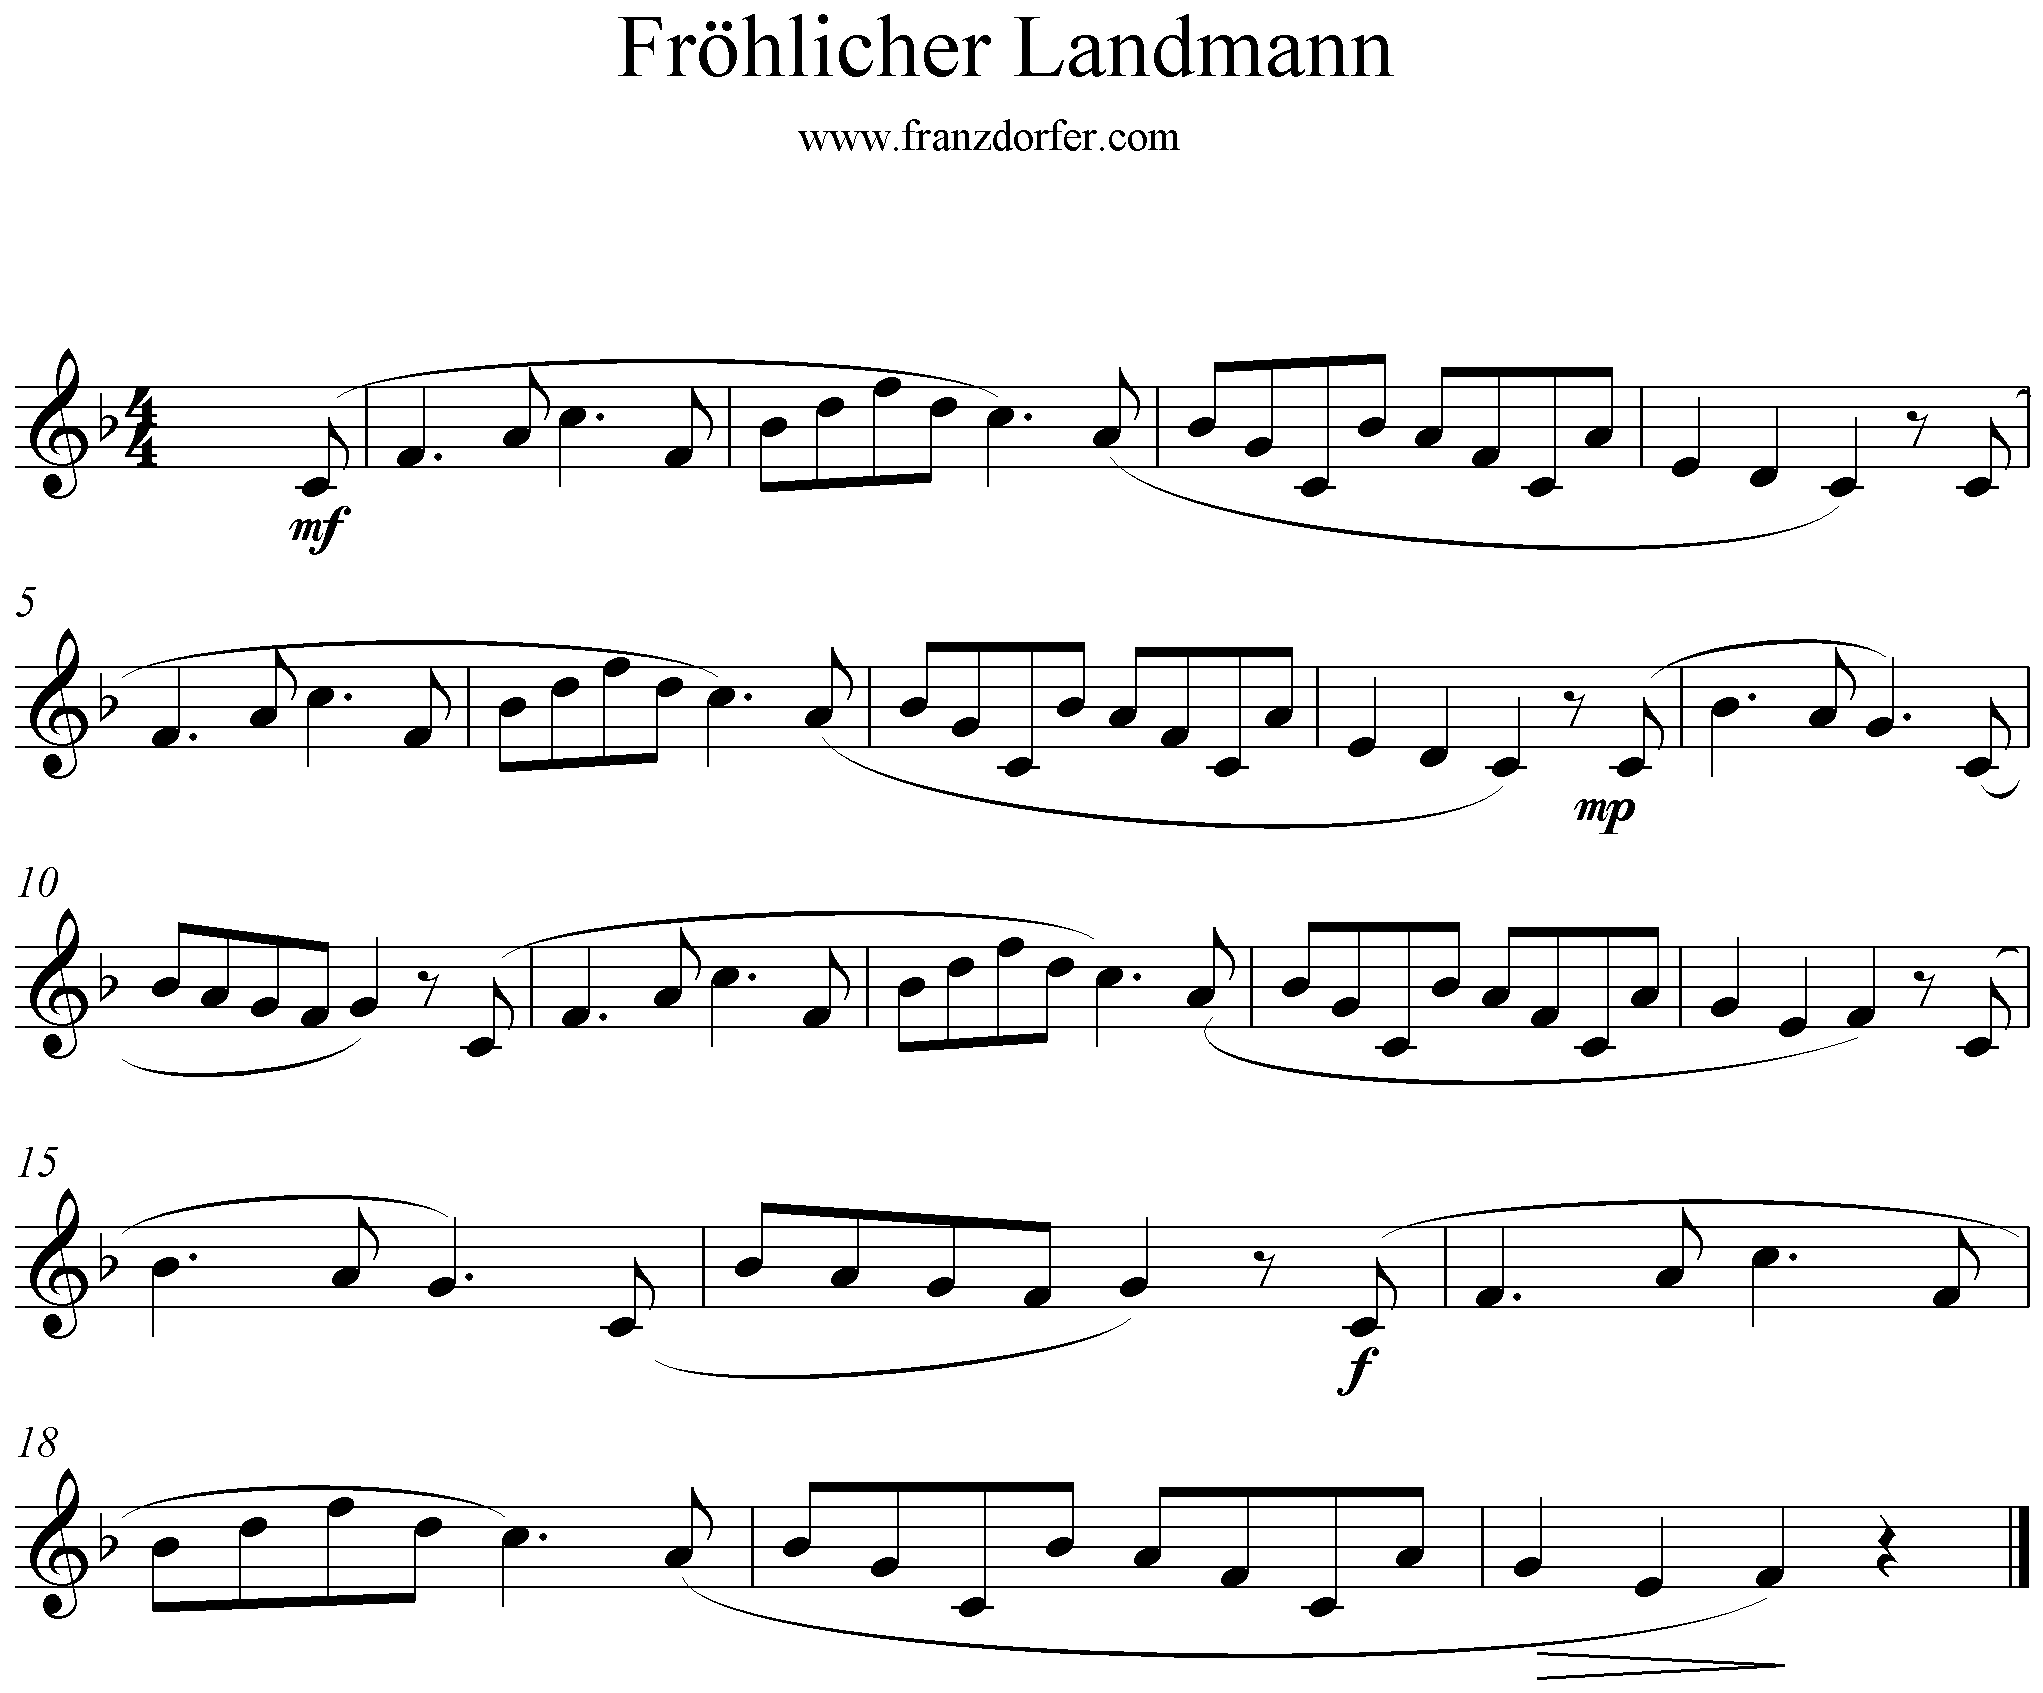 Noten der fröhliche Landmann, Blockflöte, F-Dur